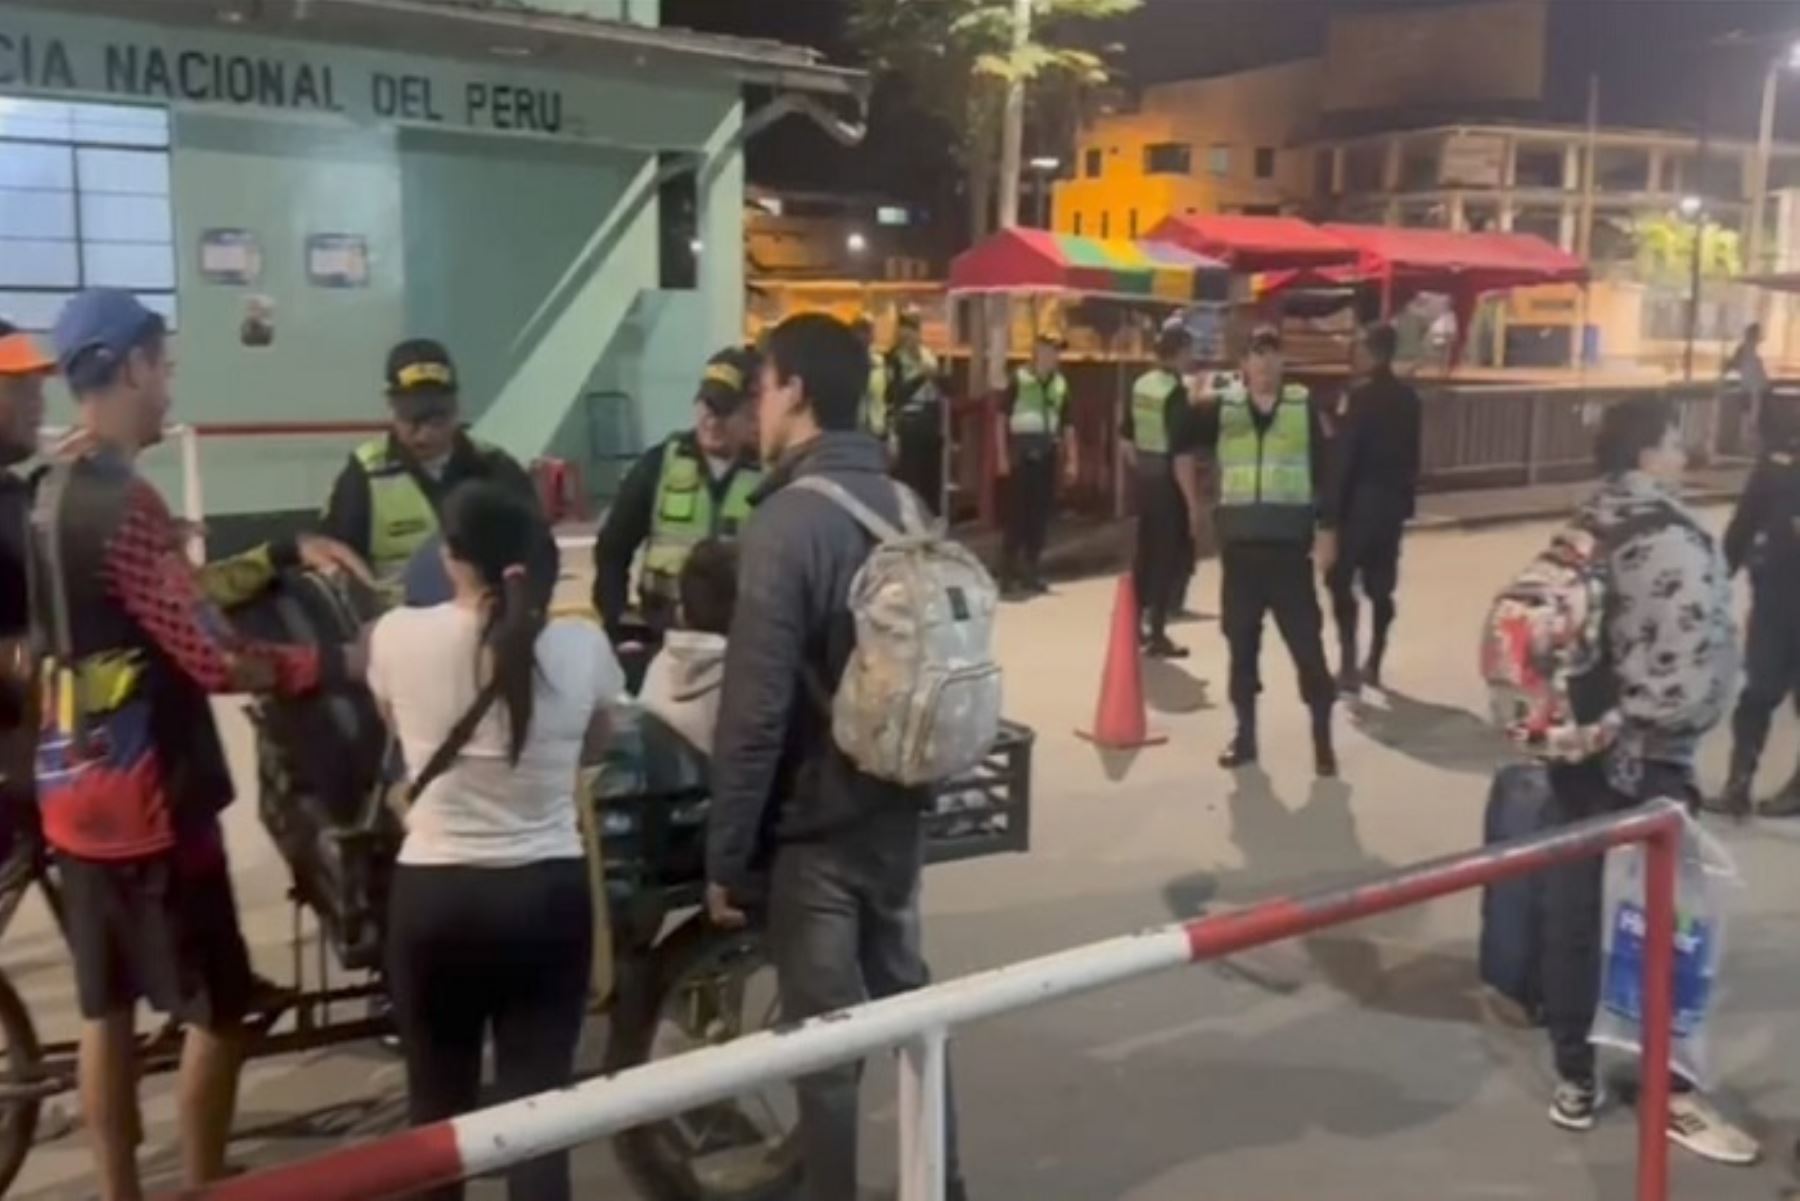 El mayor número de ciudadanos venezolanos que ha cruzado la frontera con rumbo a Ecuador lo ha hecho de noche. ANDINA/Difusión